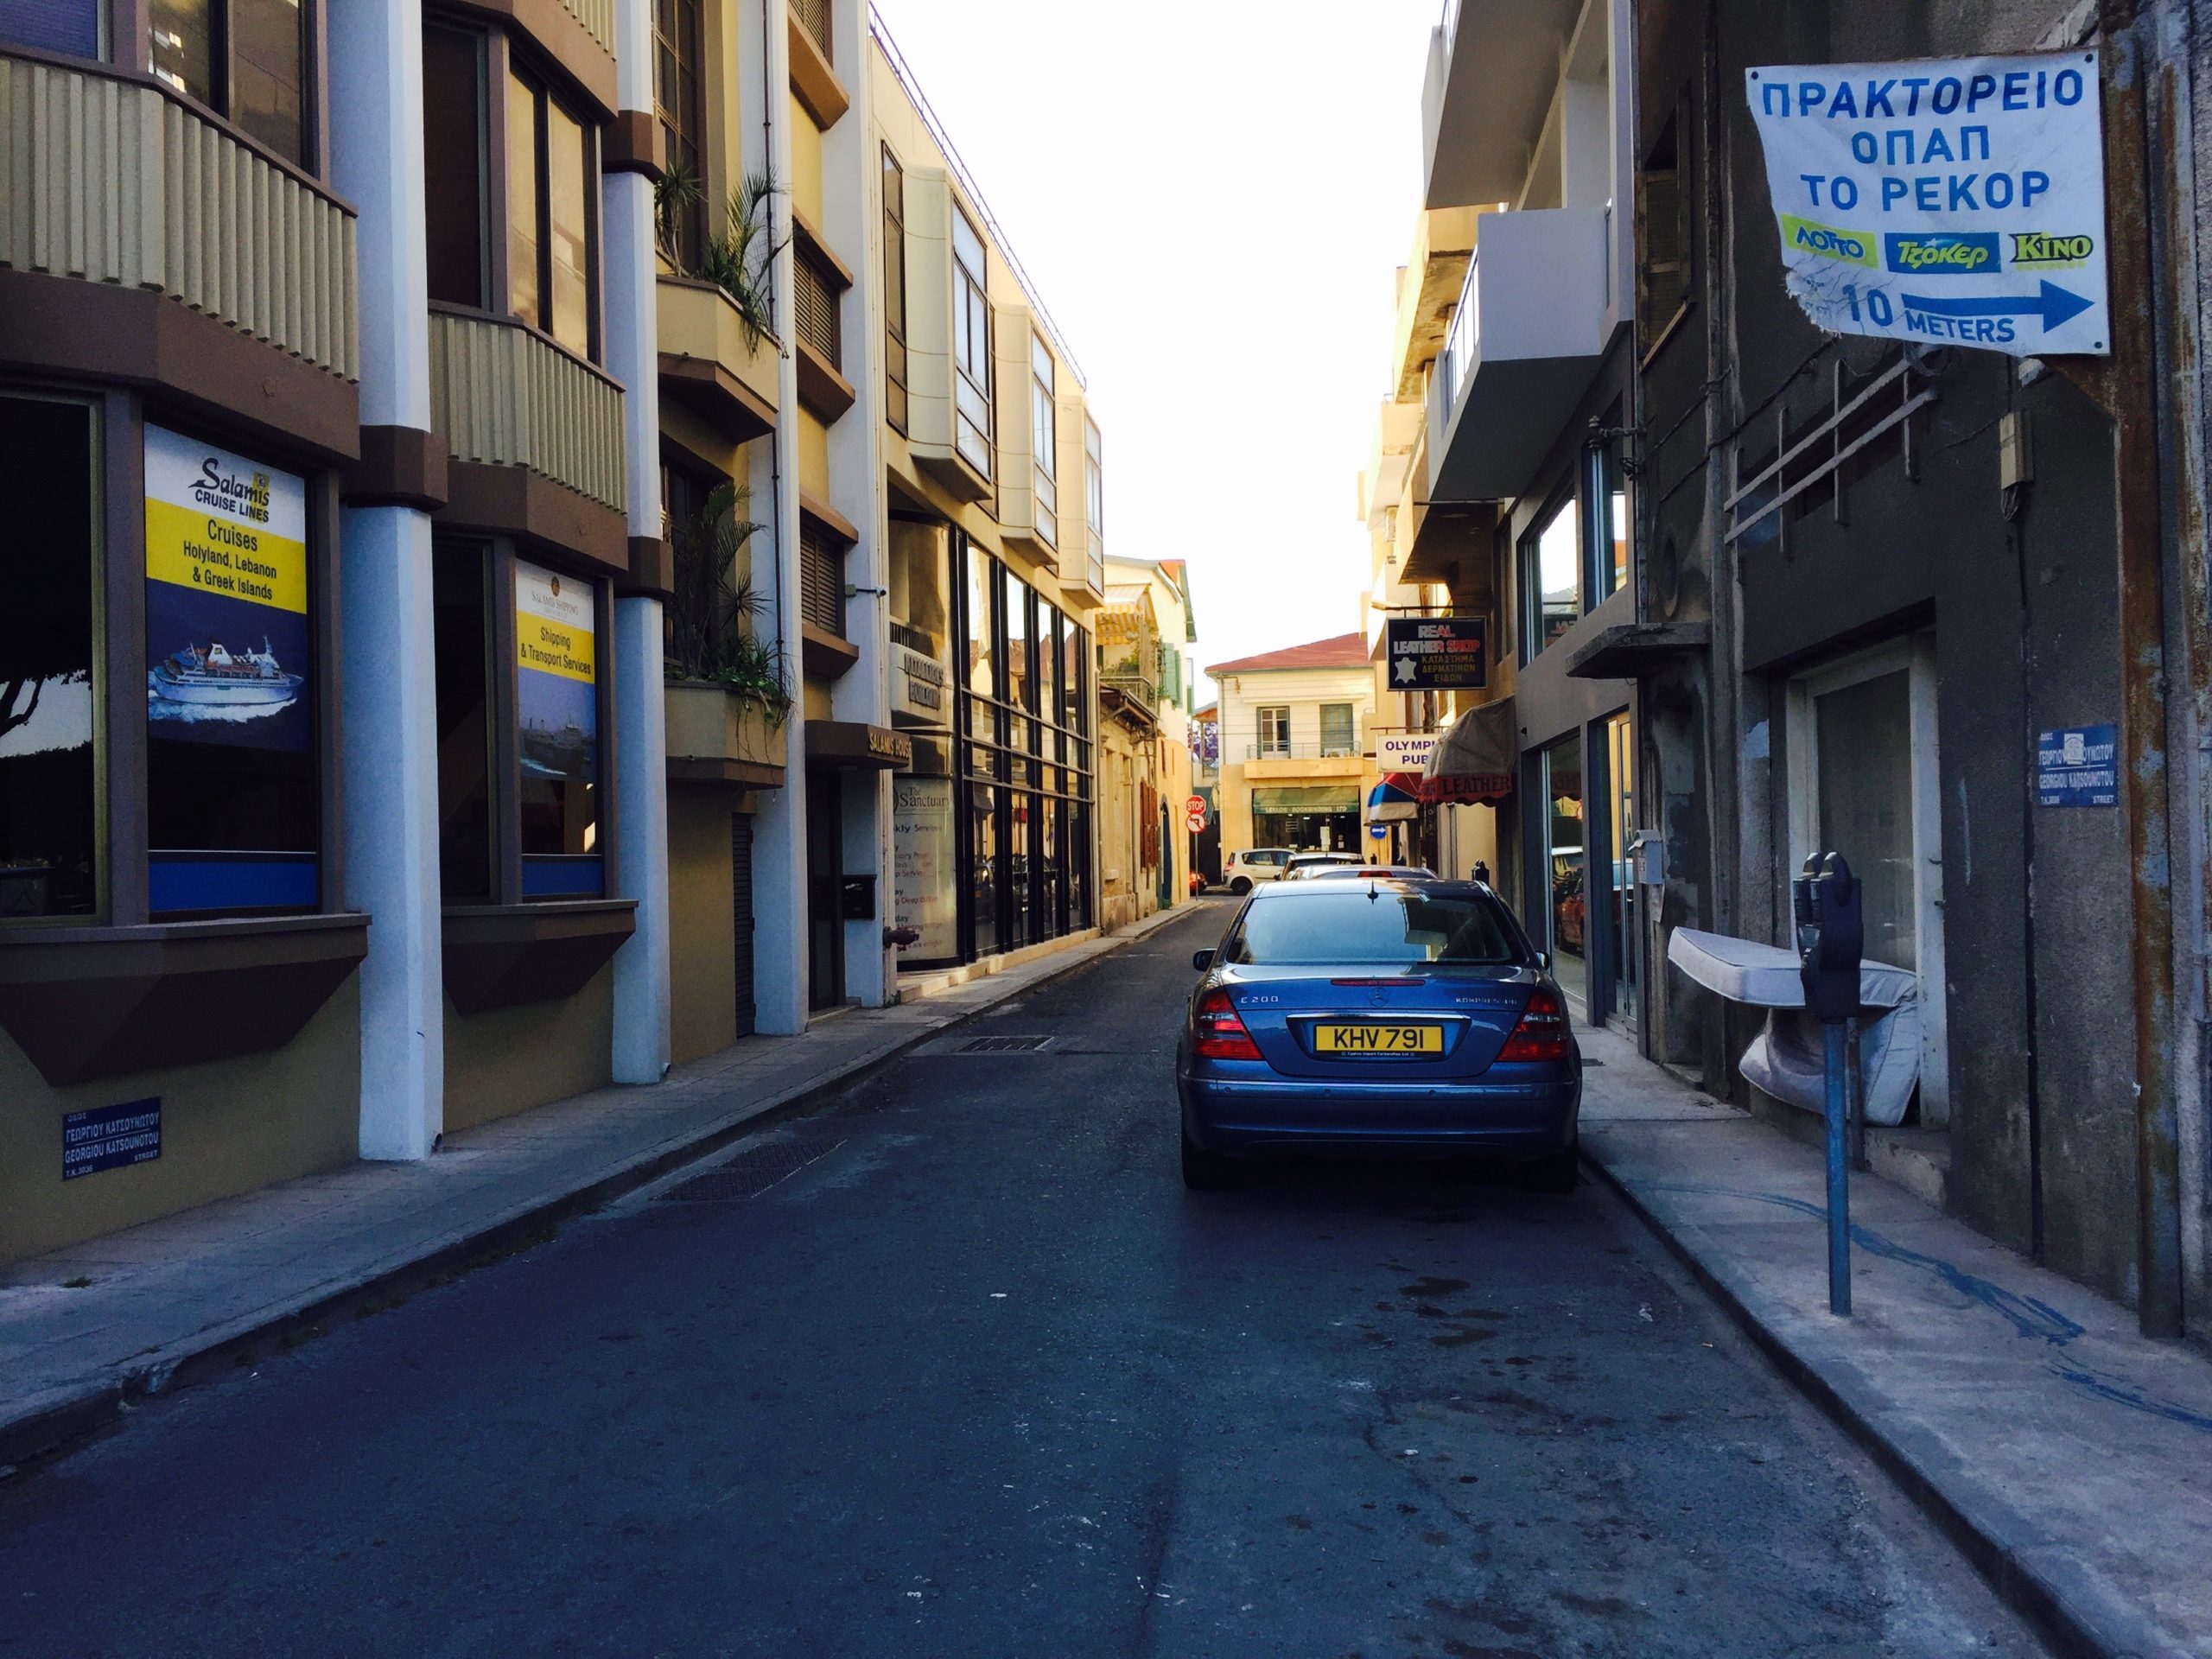 キプロスの街の人通りの少ない裏通り